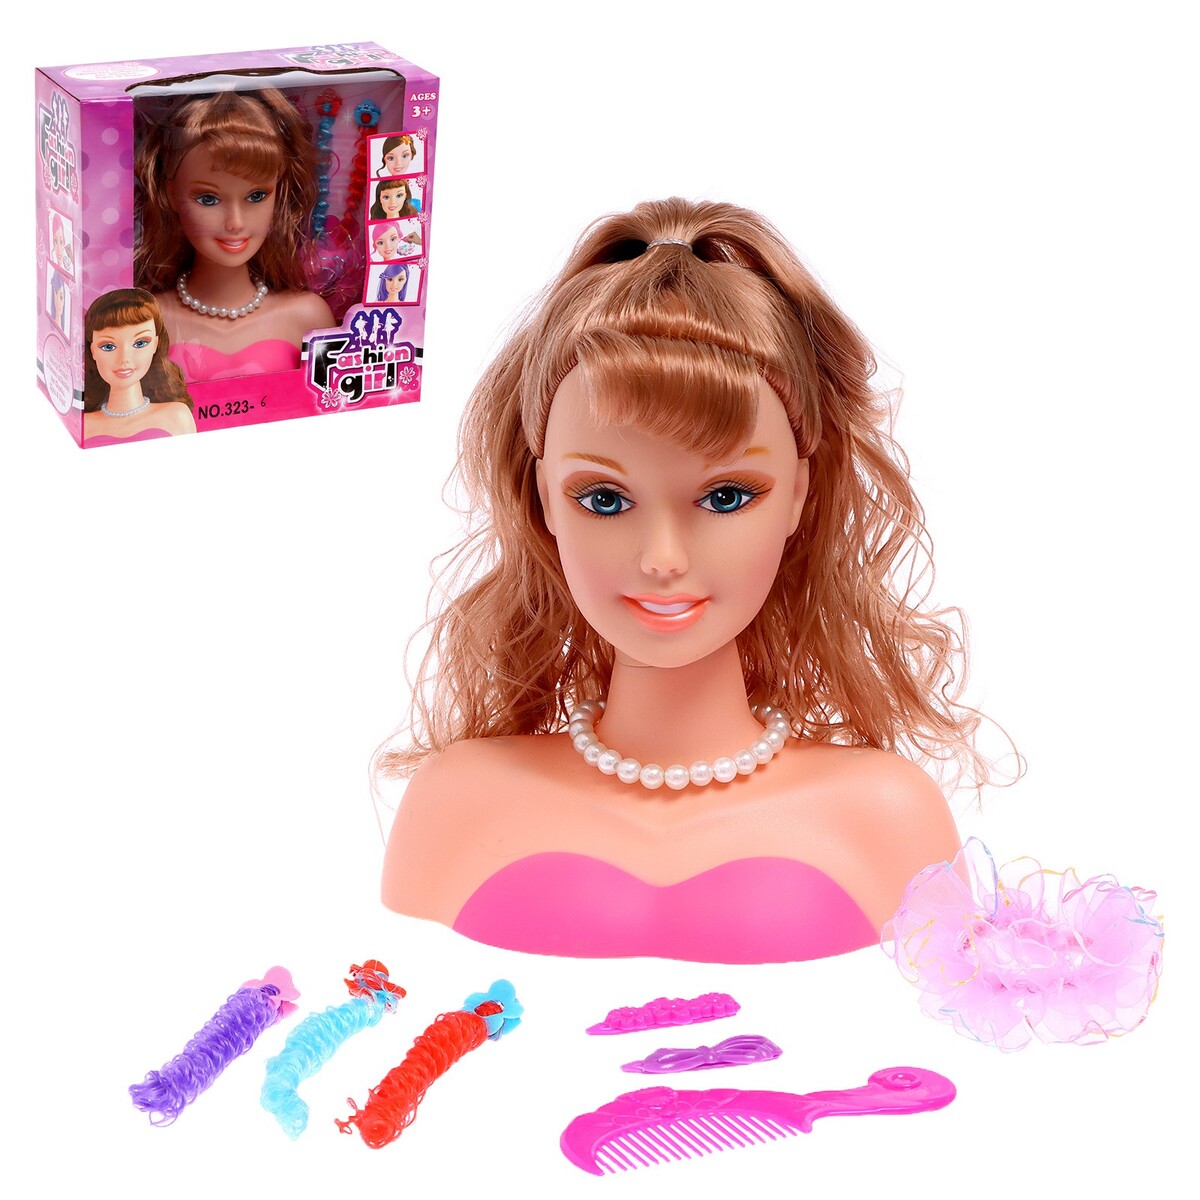 Игры для девочек макияж и прически - купить в интернет магазине 